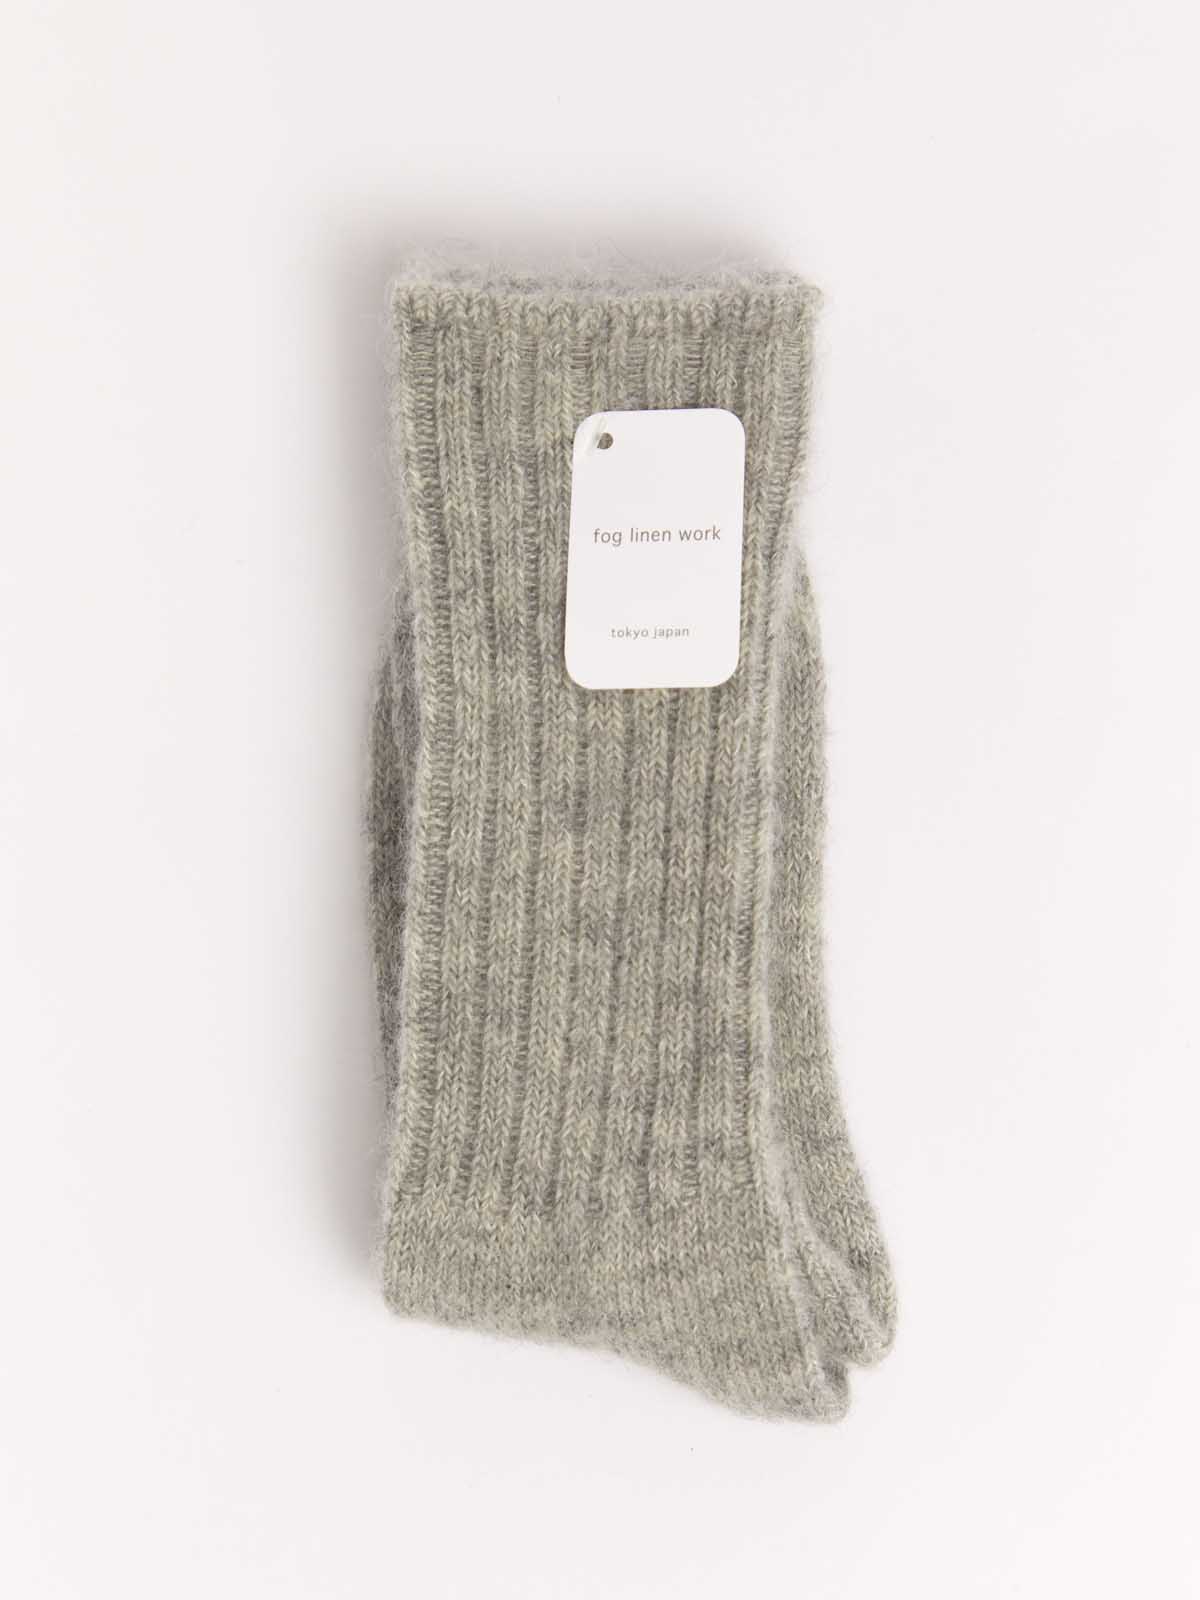 mohair socks by fog linen in light grey